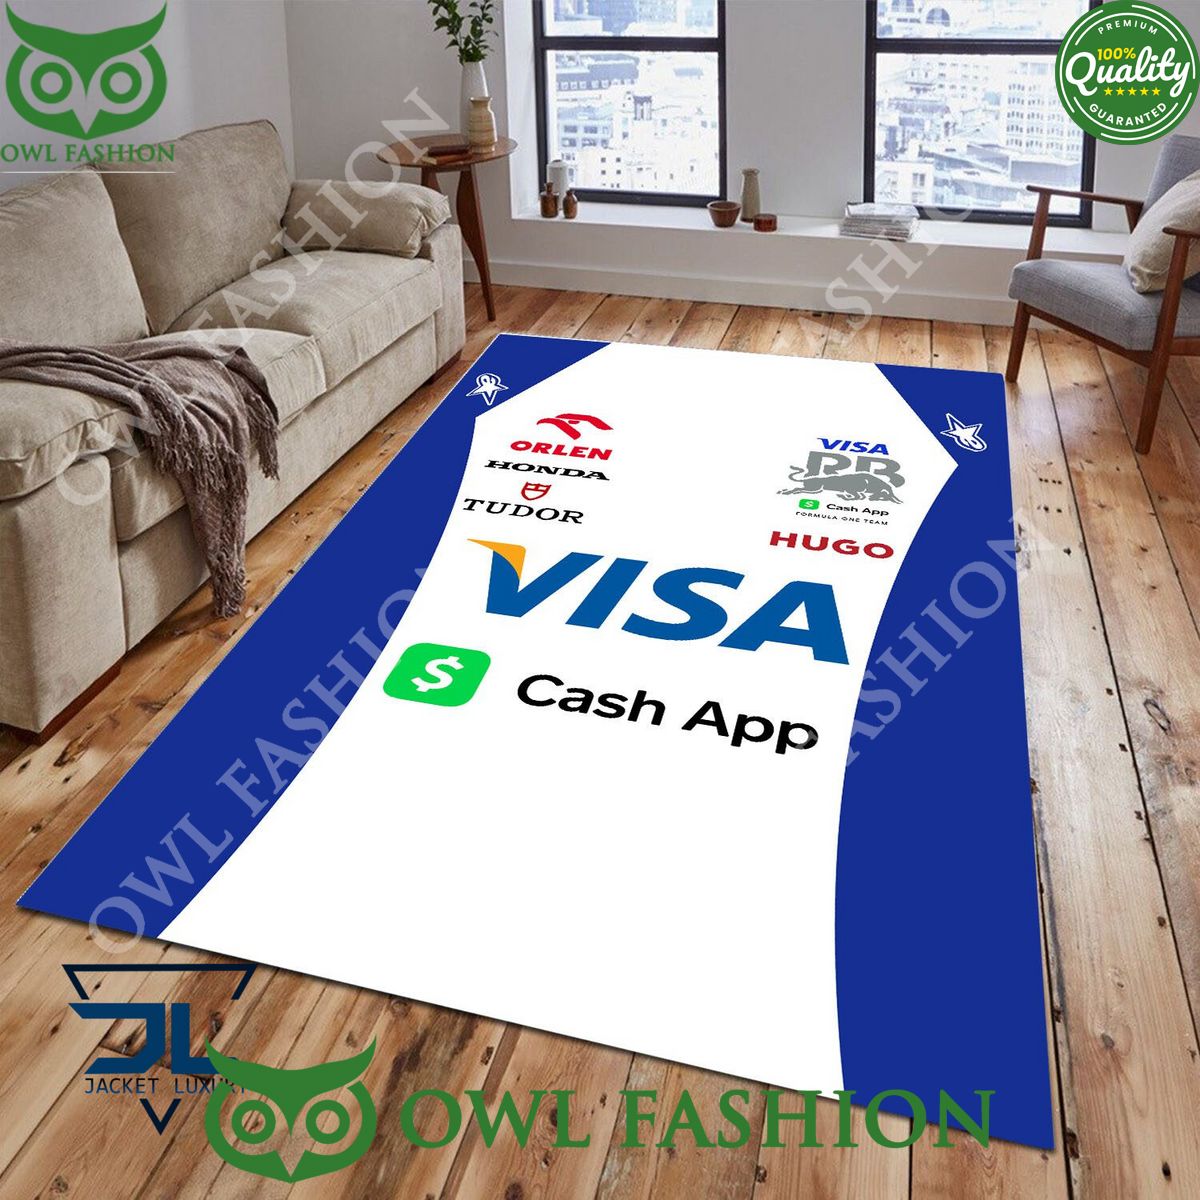 Visa Cash App RB F1 Fomular 1 Rug Carpet For Living Room